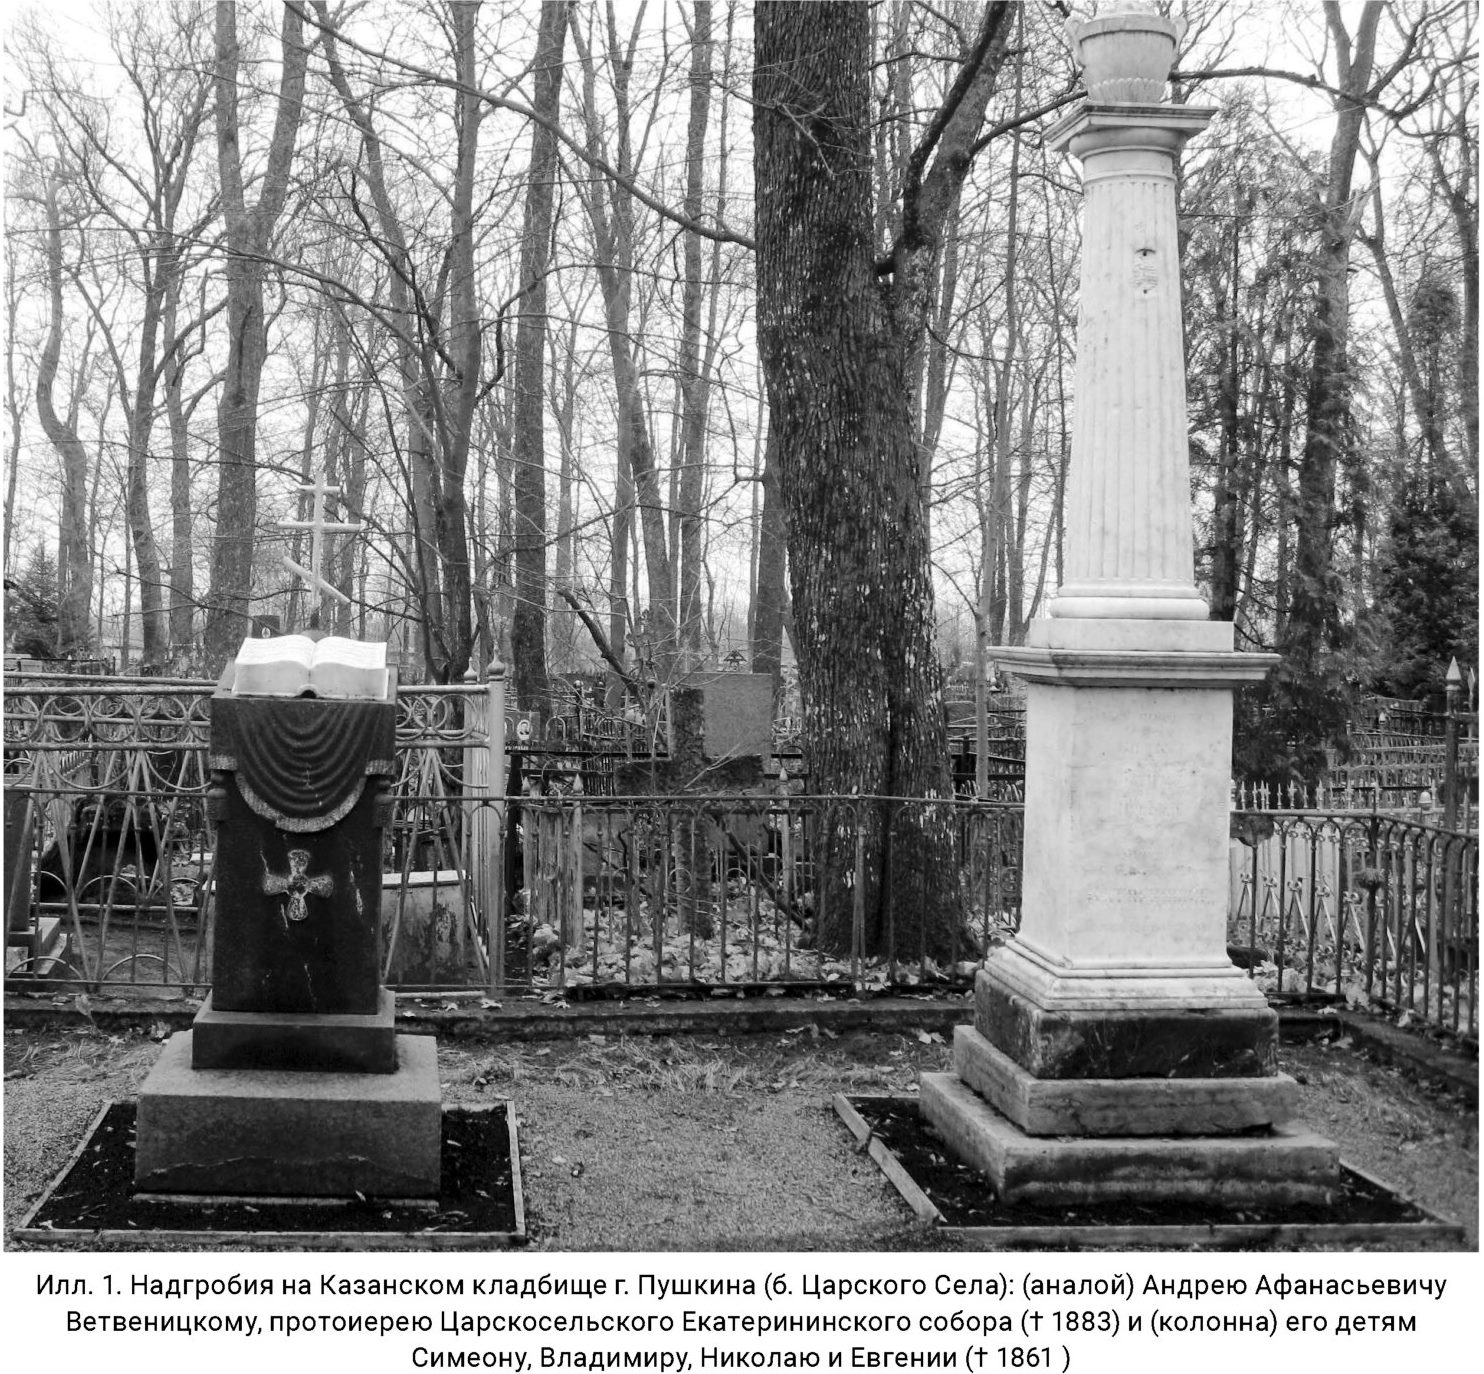 Надгробие над могилой А.А. Ветвеницкого (+1883) на Казанском кладбище Царского Села